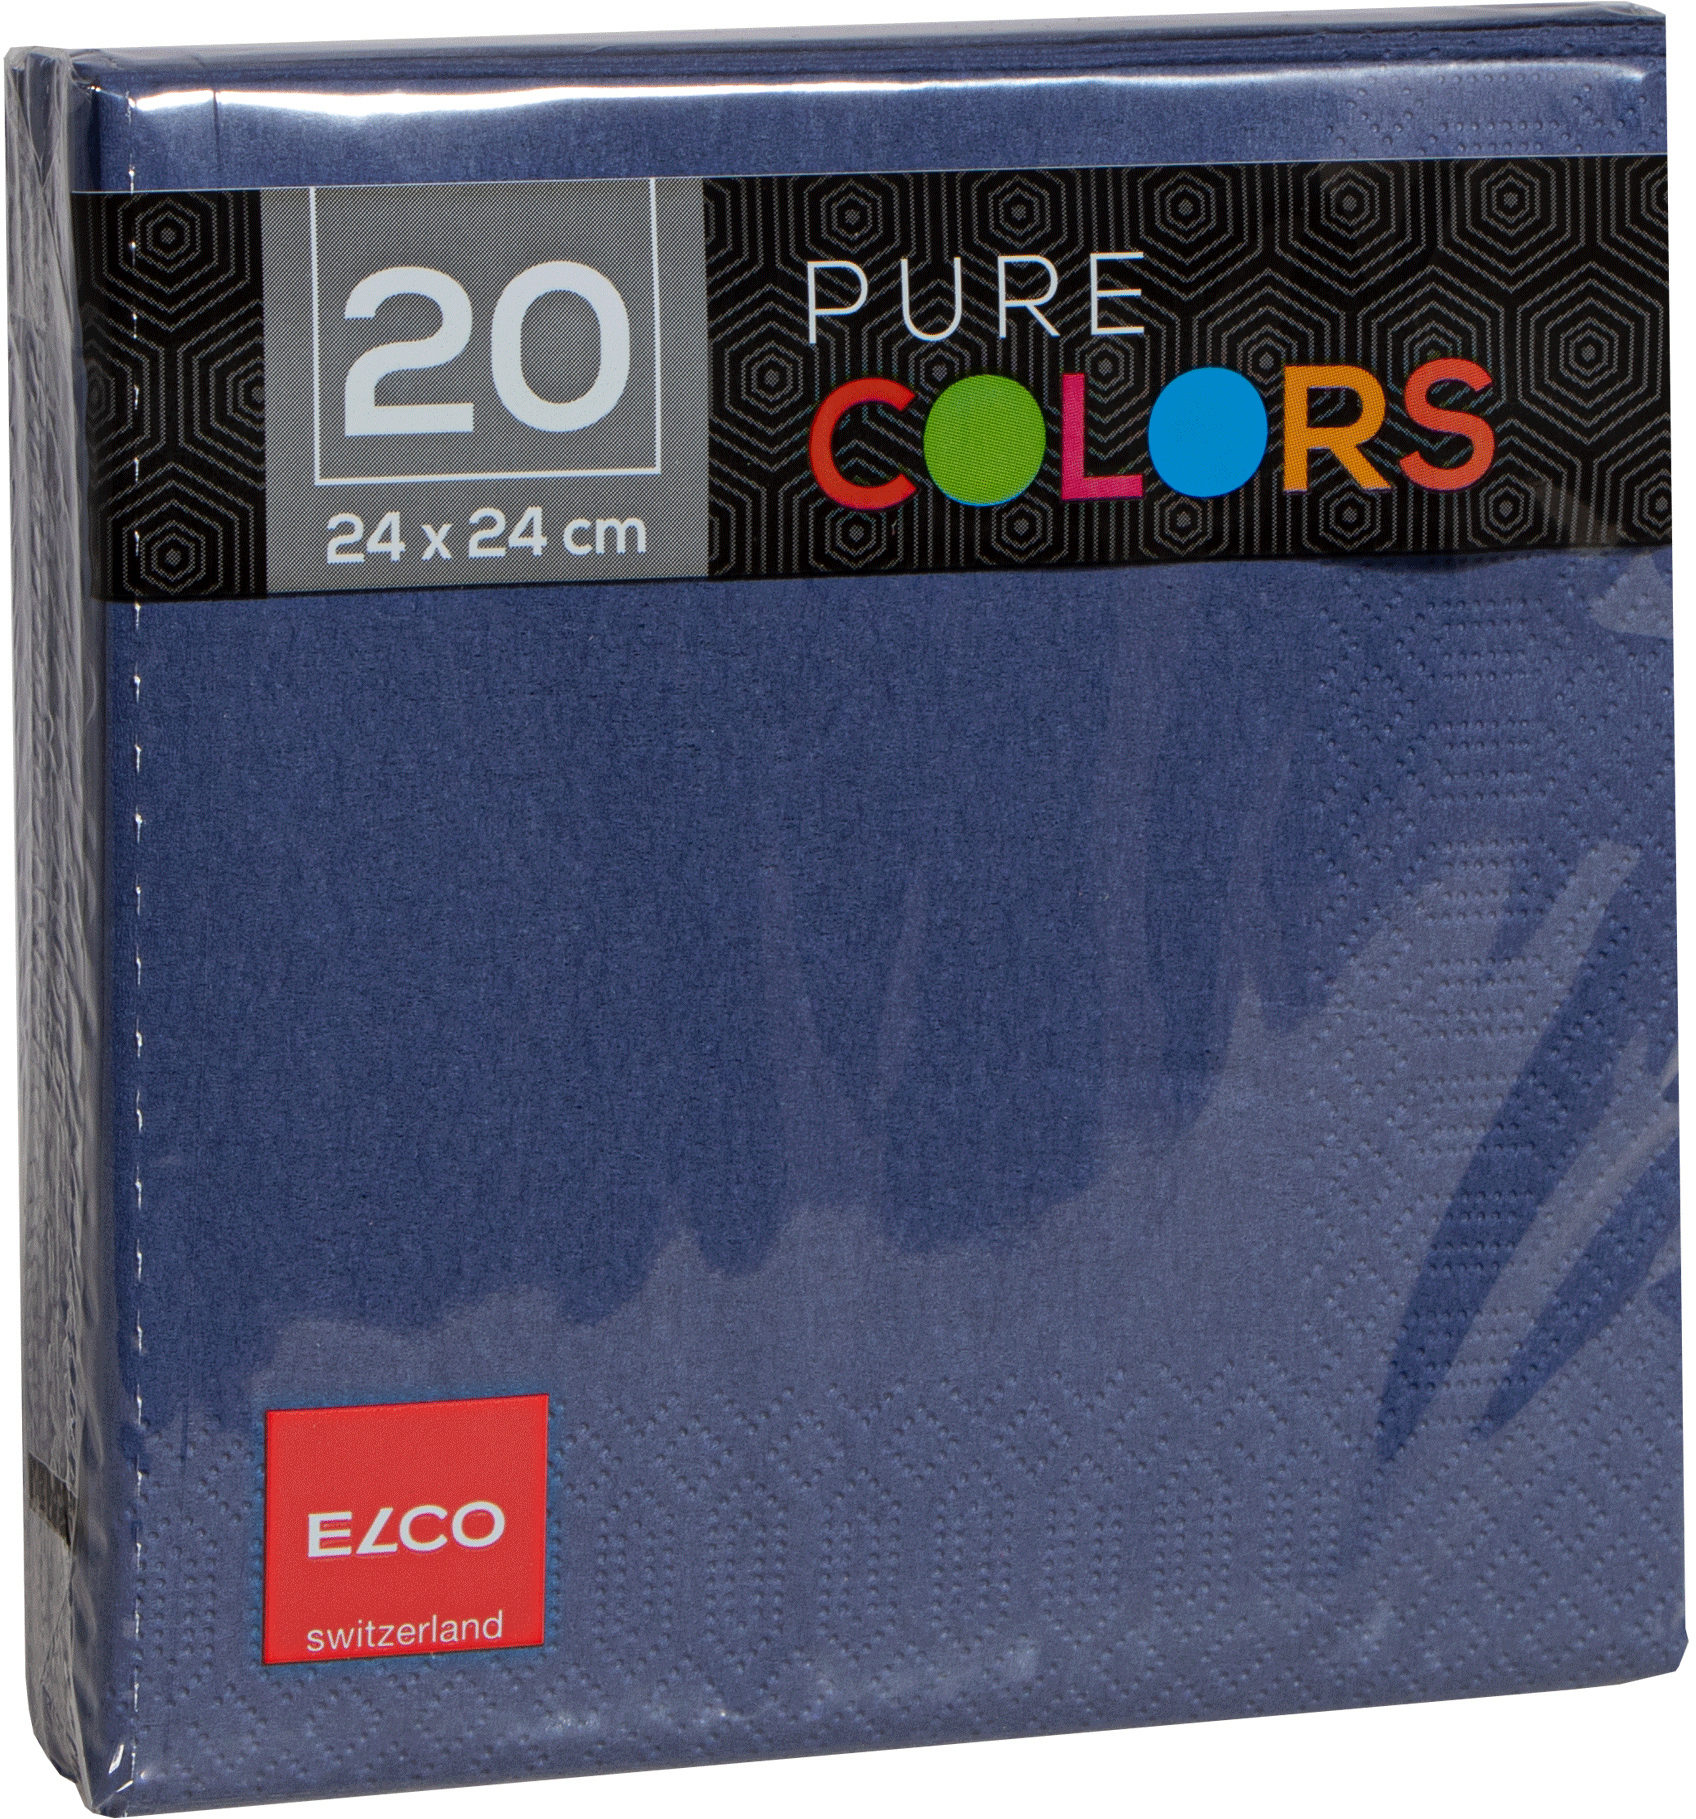 ELCO Serviettes tissue 24x24cm PC234020-465 3 plis, bleu foncé 20pcs.